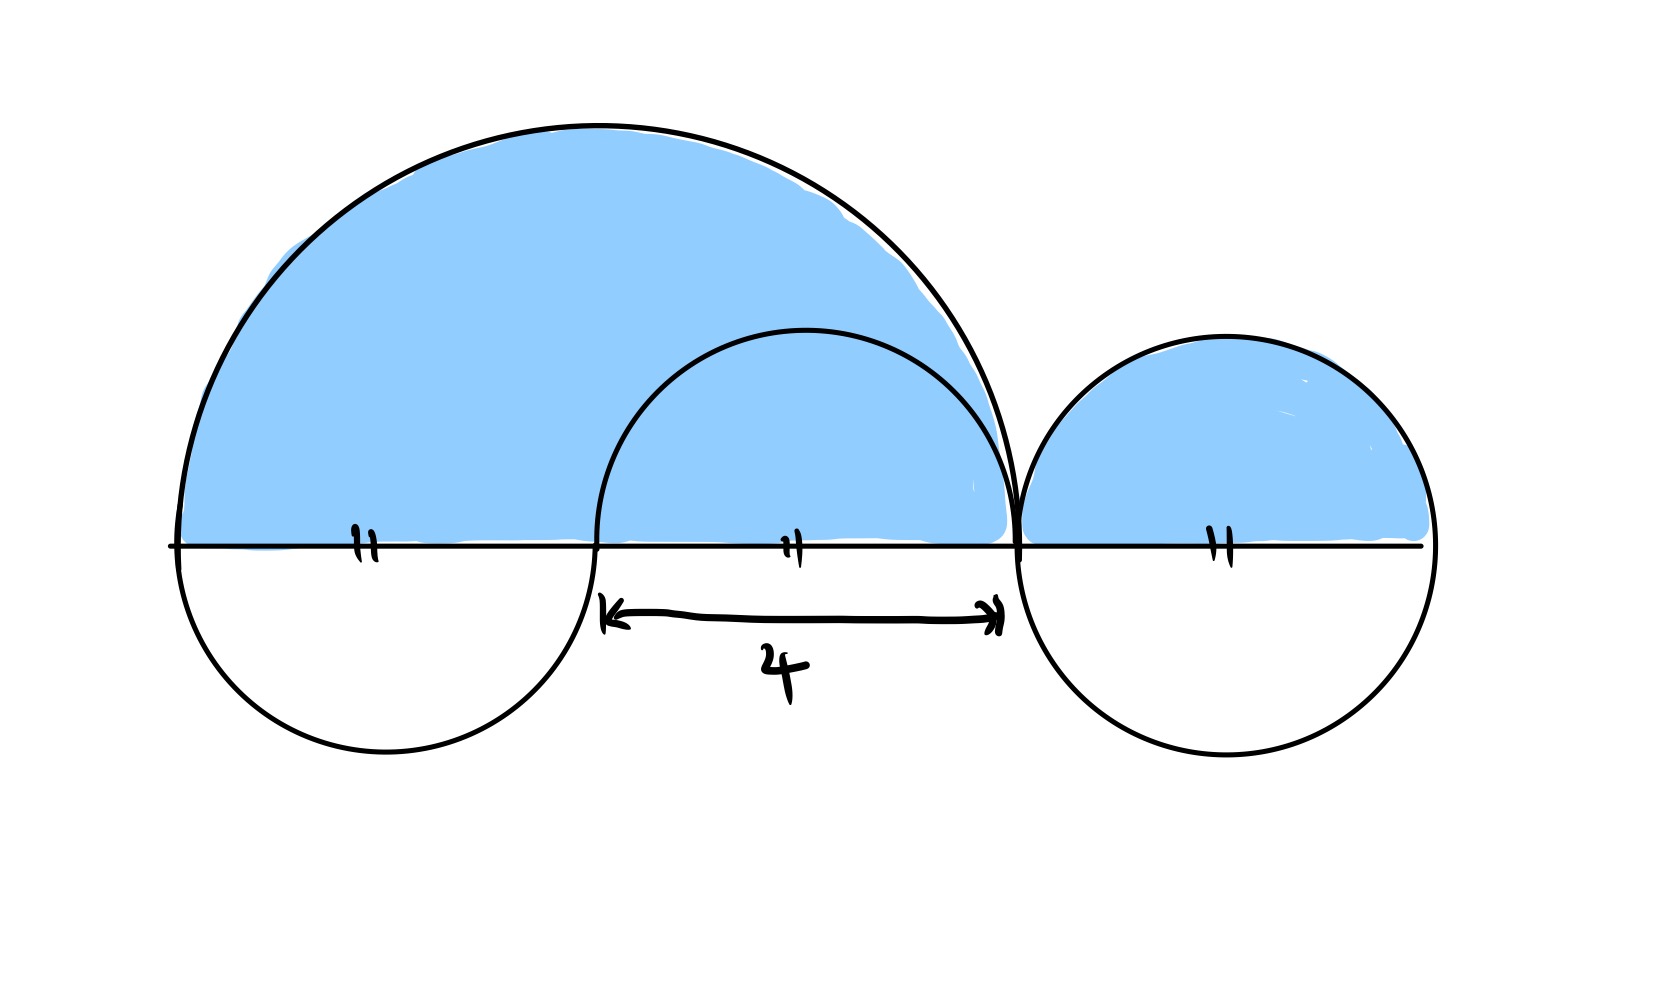 Five semi-circles special configuration I